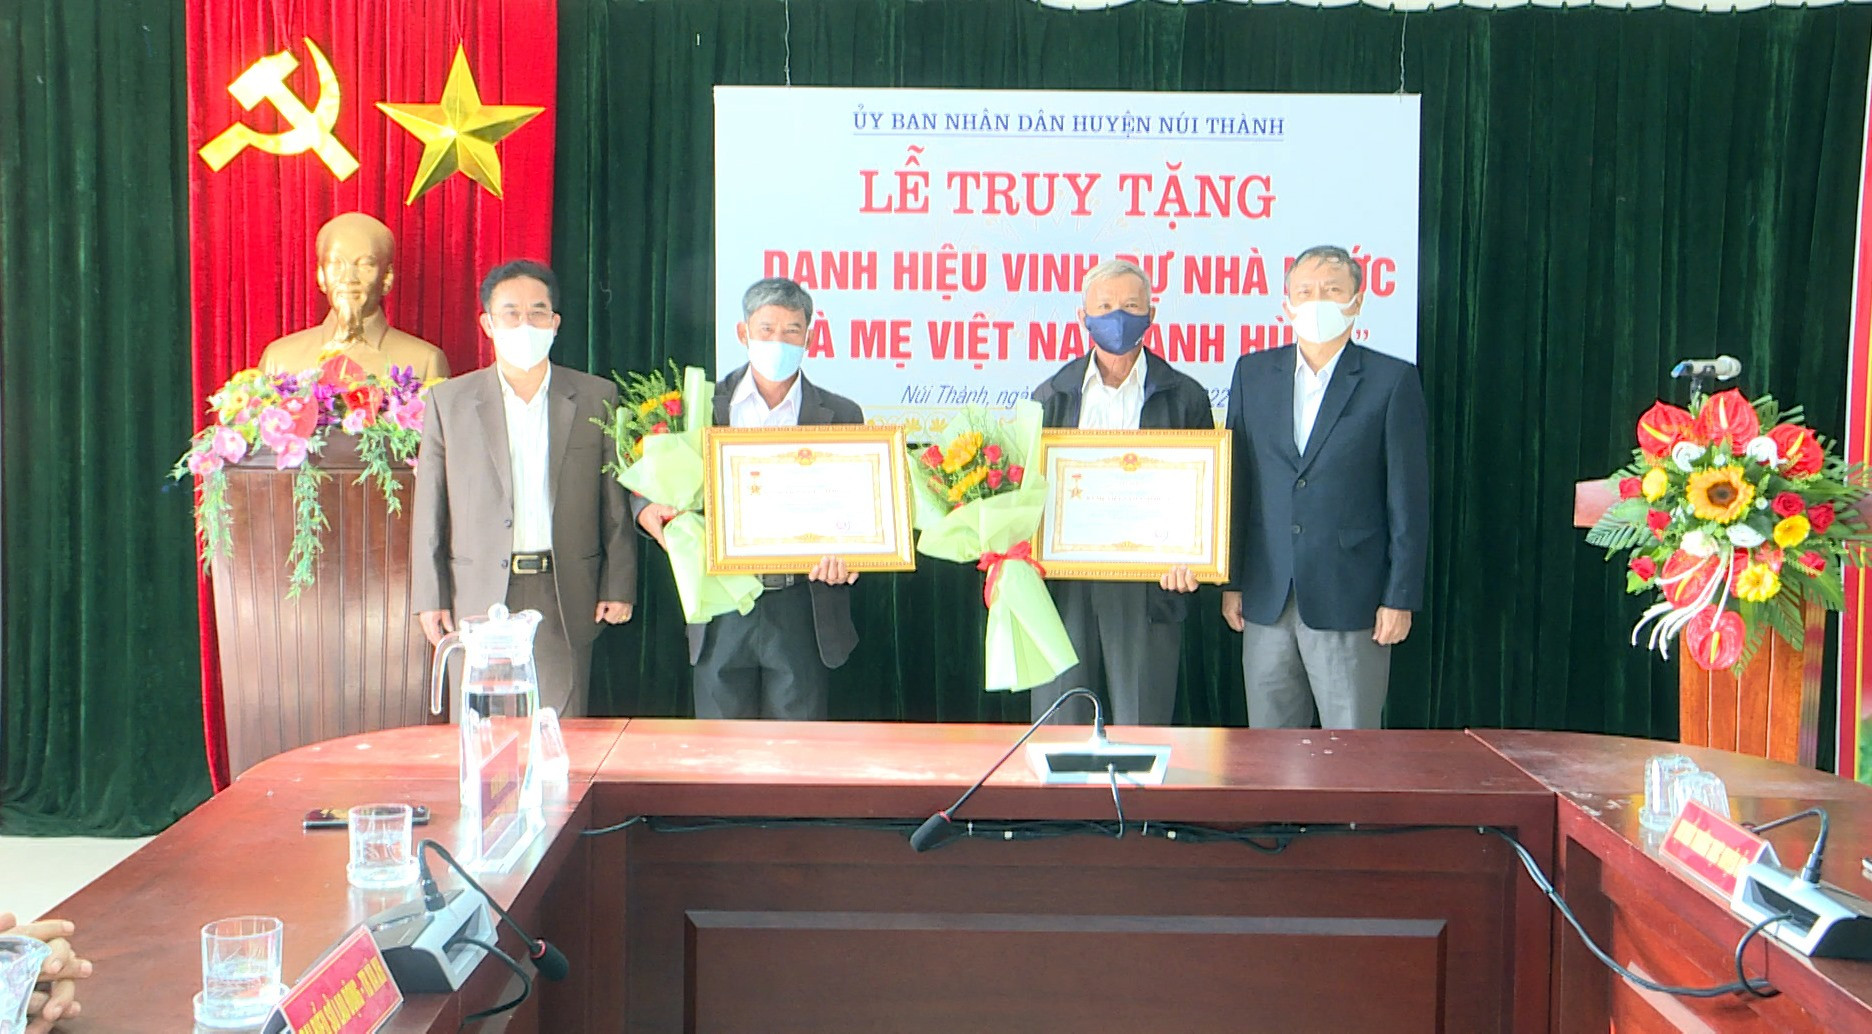 Huyện Núi Thành truy tặng danh hiêu vinh dự nhà nước Bà mẹ Việt Nam anh hùng. Ảnh: VĂN PHIN